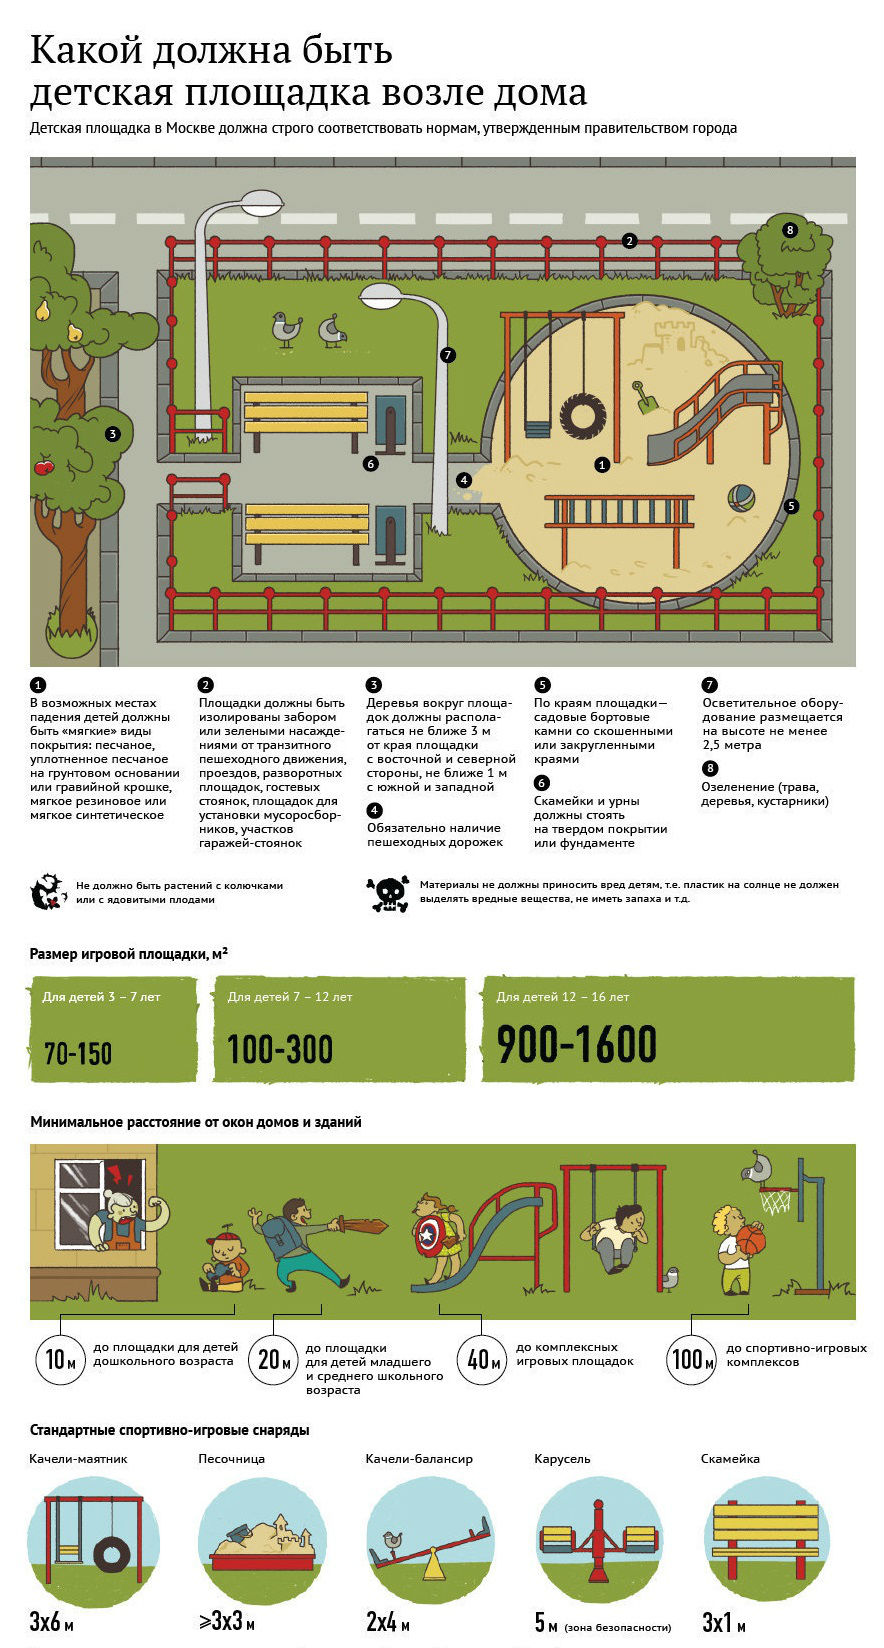 Какой должна быть детская площадка возле дома? Инфографика : RUcountry